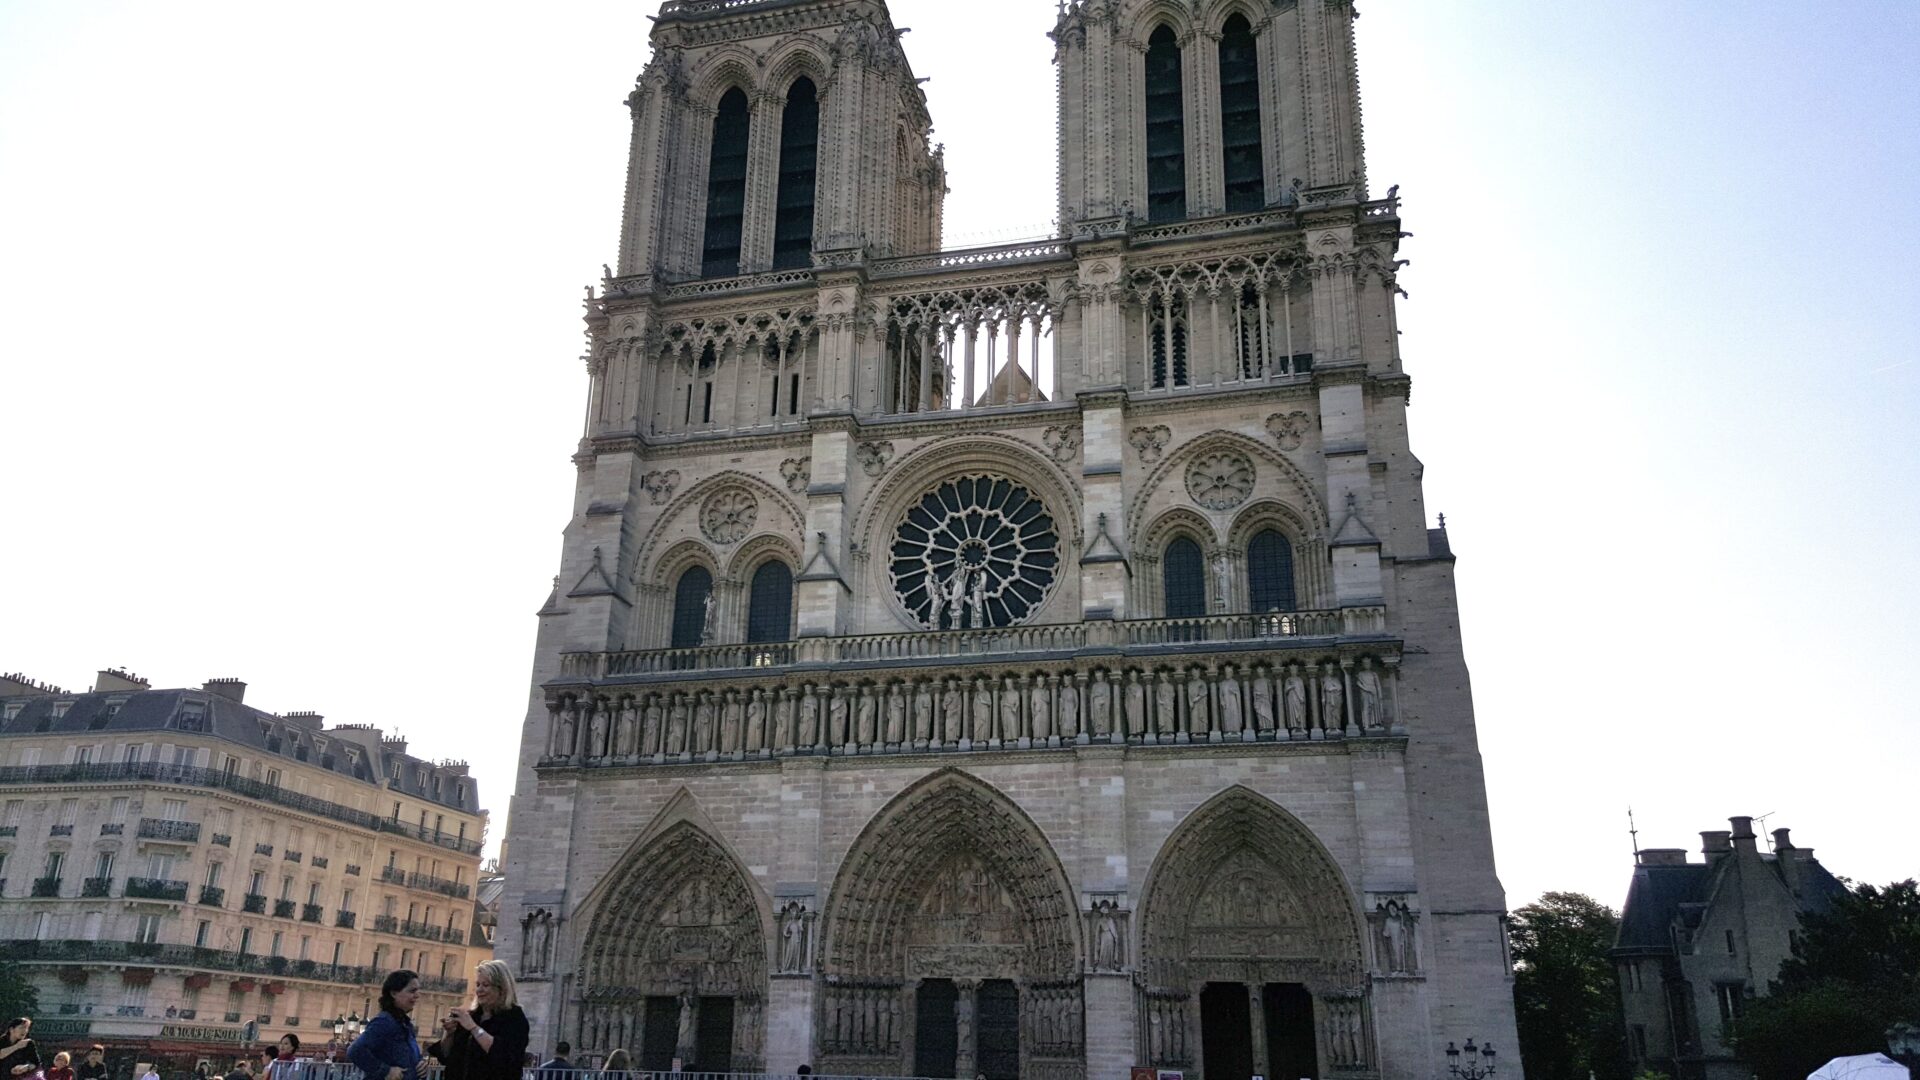 パリのノートル･ダム大聖堂。1831年に暴徒襲撃事件が起こり破損。後年ヴィオレ・ル・デュクが修復に関わった。2019年4月15日には大規模火災が発生し屋根の尖塔が崩落。2024年の修復完了を目指している。